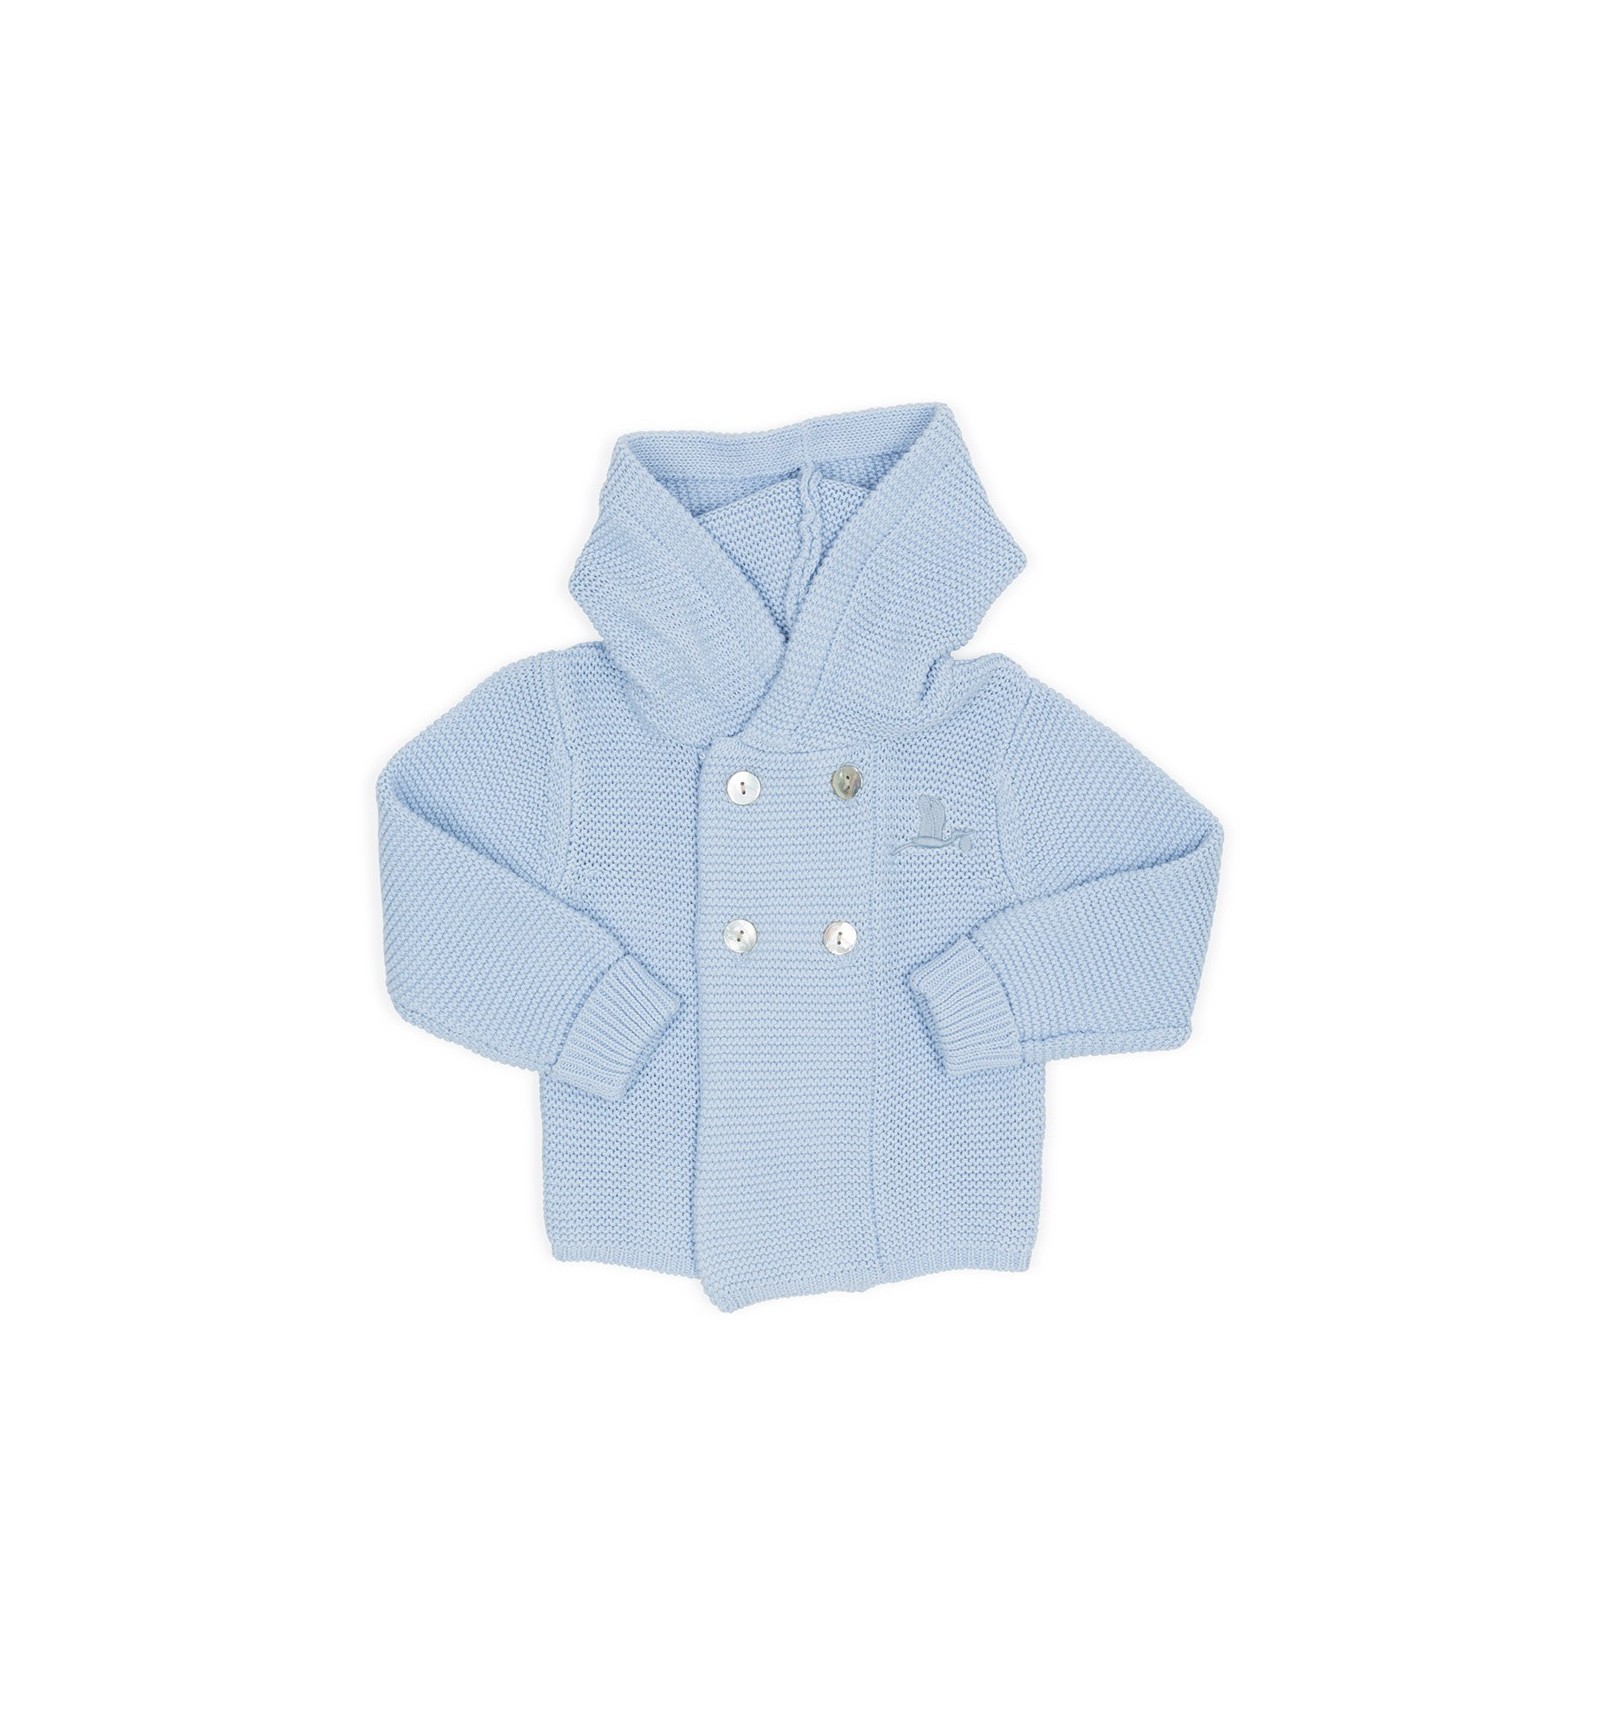 Veste classique tricot pour bébé bleu